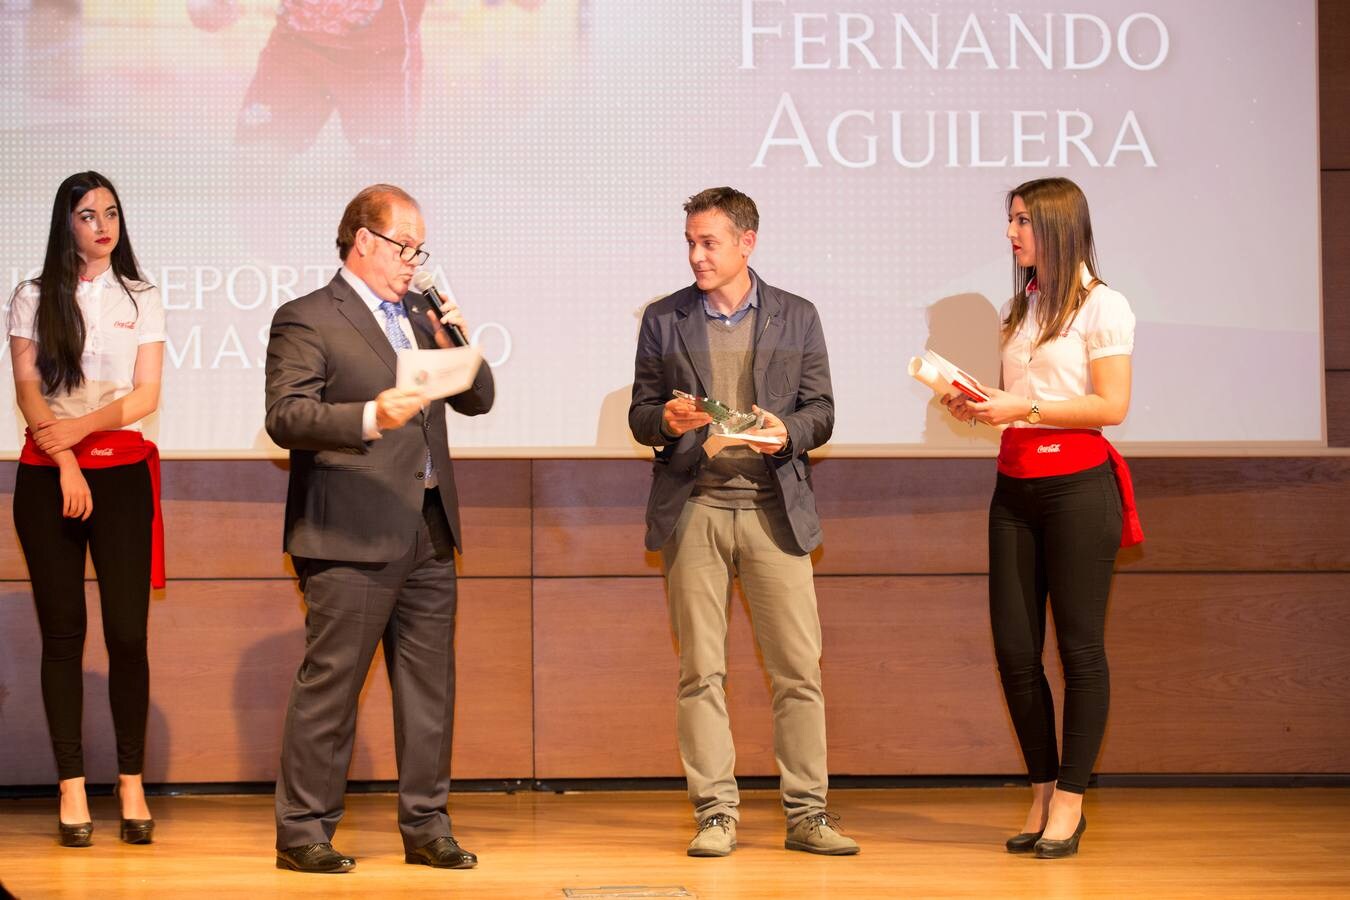 La Asociación Española de la Prensa Deportiva en Granada coronó anoche en el Auditorio de Caja Rural a los mejores atletas del 2017